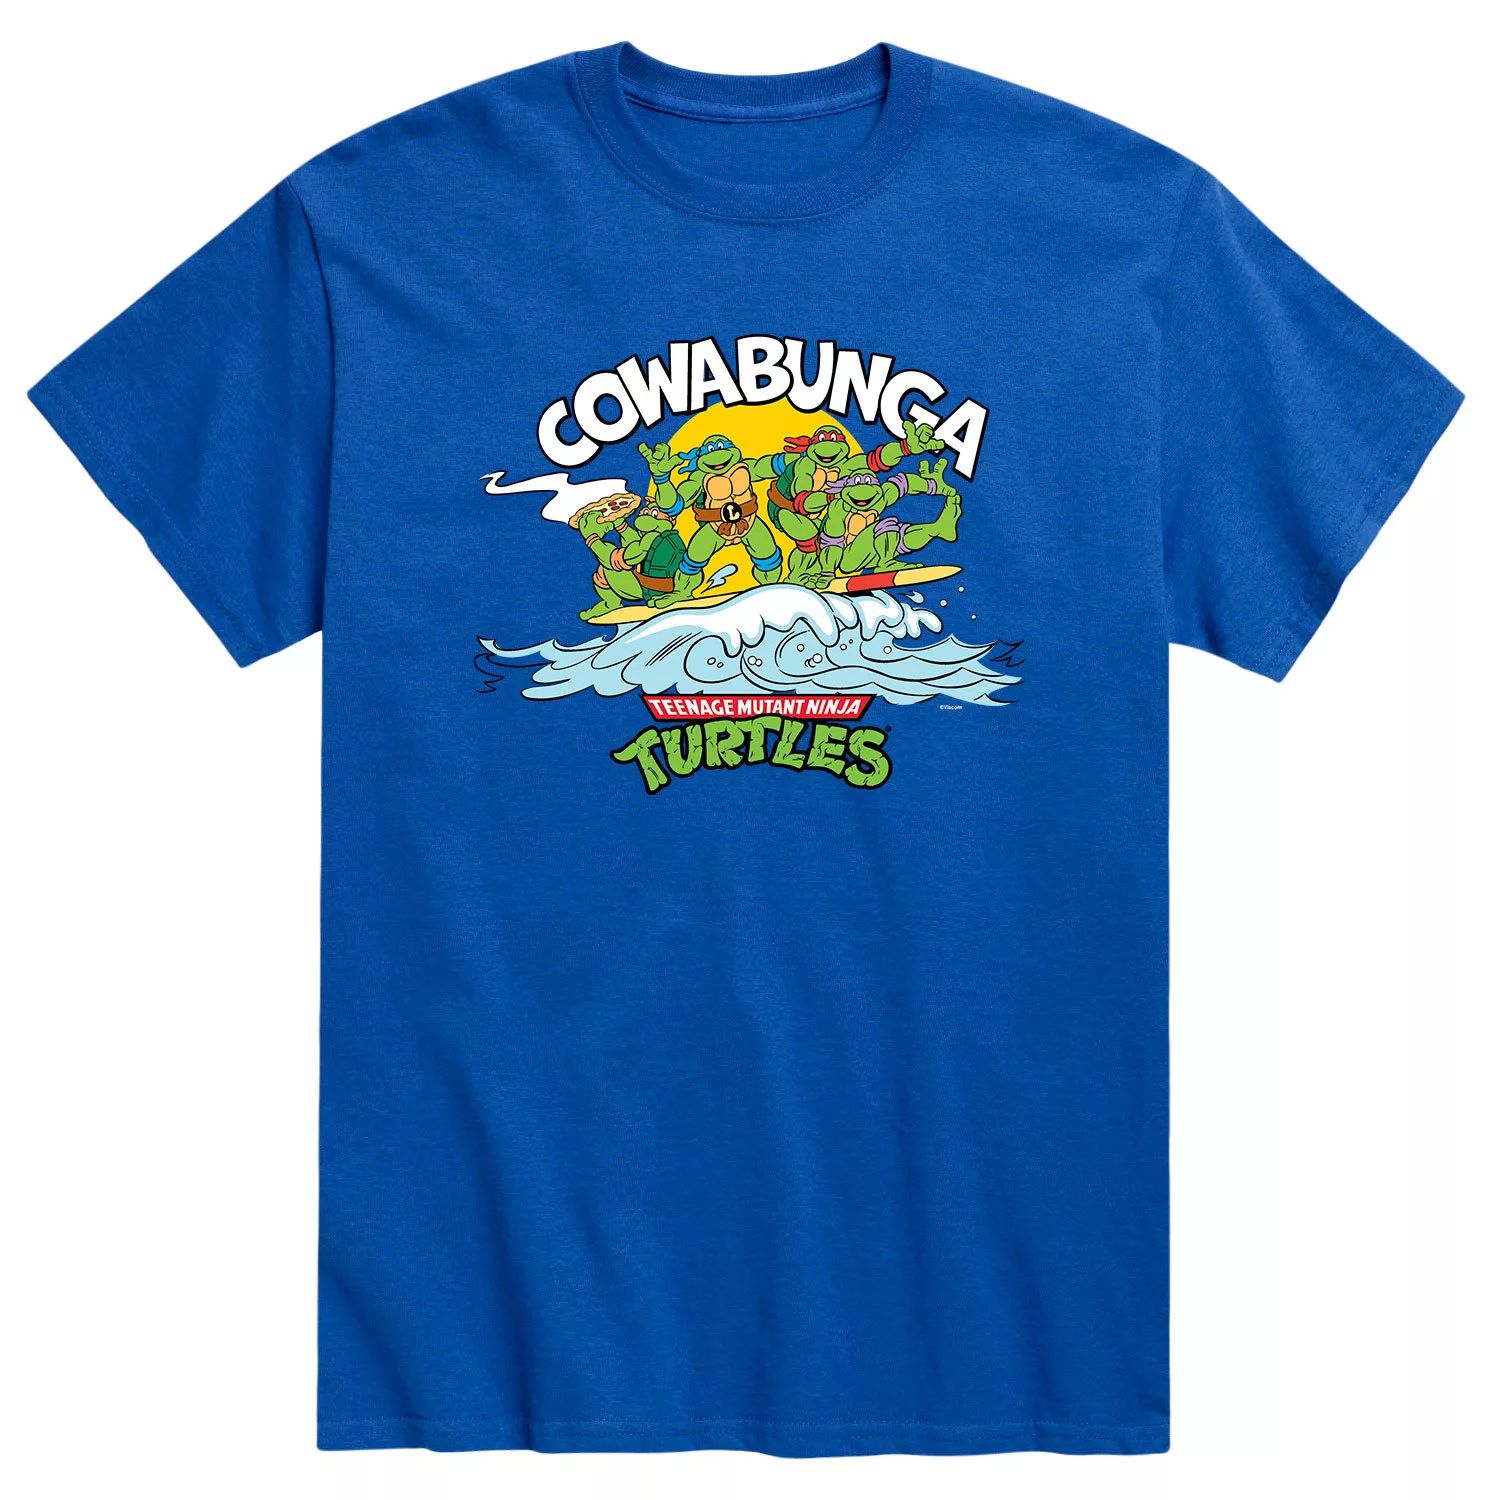 Мужская футболка Teenage Mutant Ninja Turtles Cowabunga Licensed Character набор teenage mutant ninja turtles cowabunga collection [ps5 английская версия] оружие игровое штык нож м9 байонет 2 драгон гласс деревянный